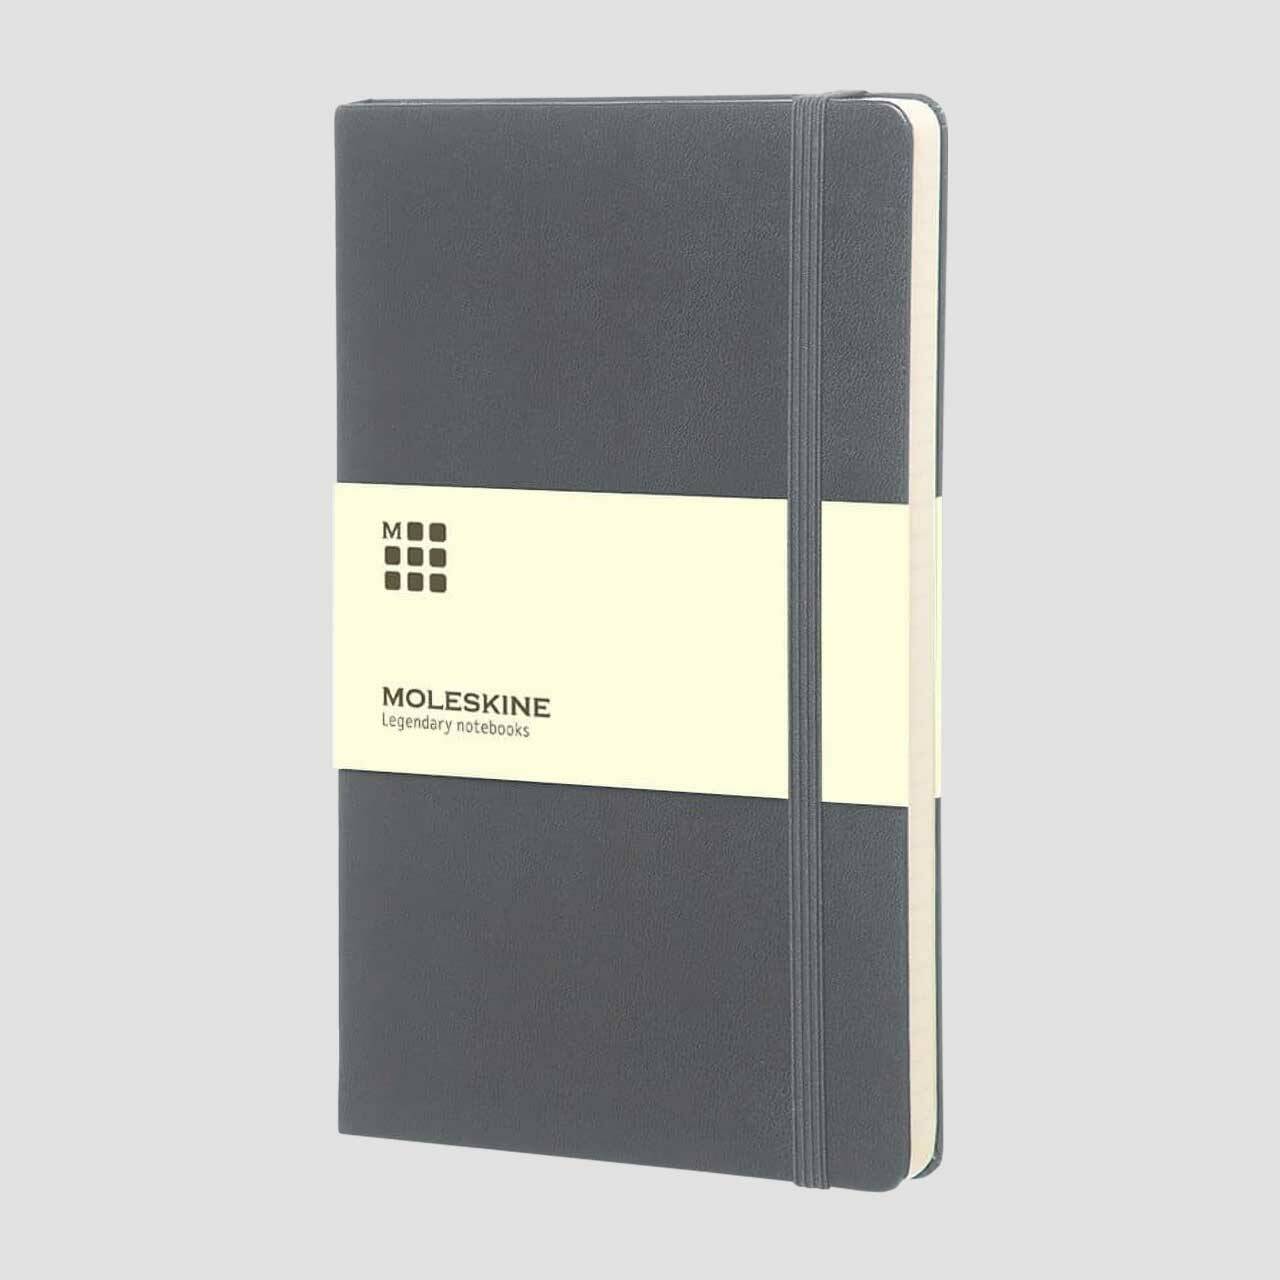 Moleskine notitieboek hard cover met banderol, grijs